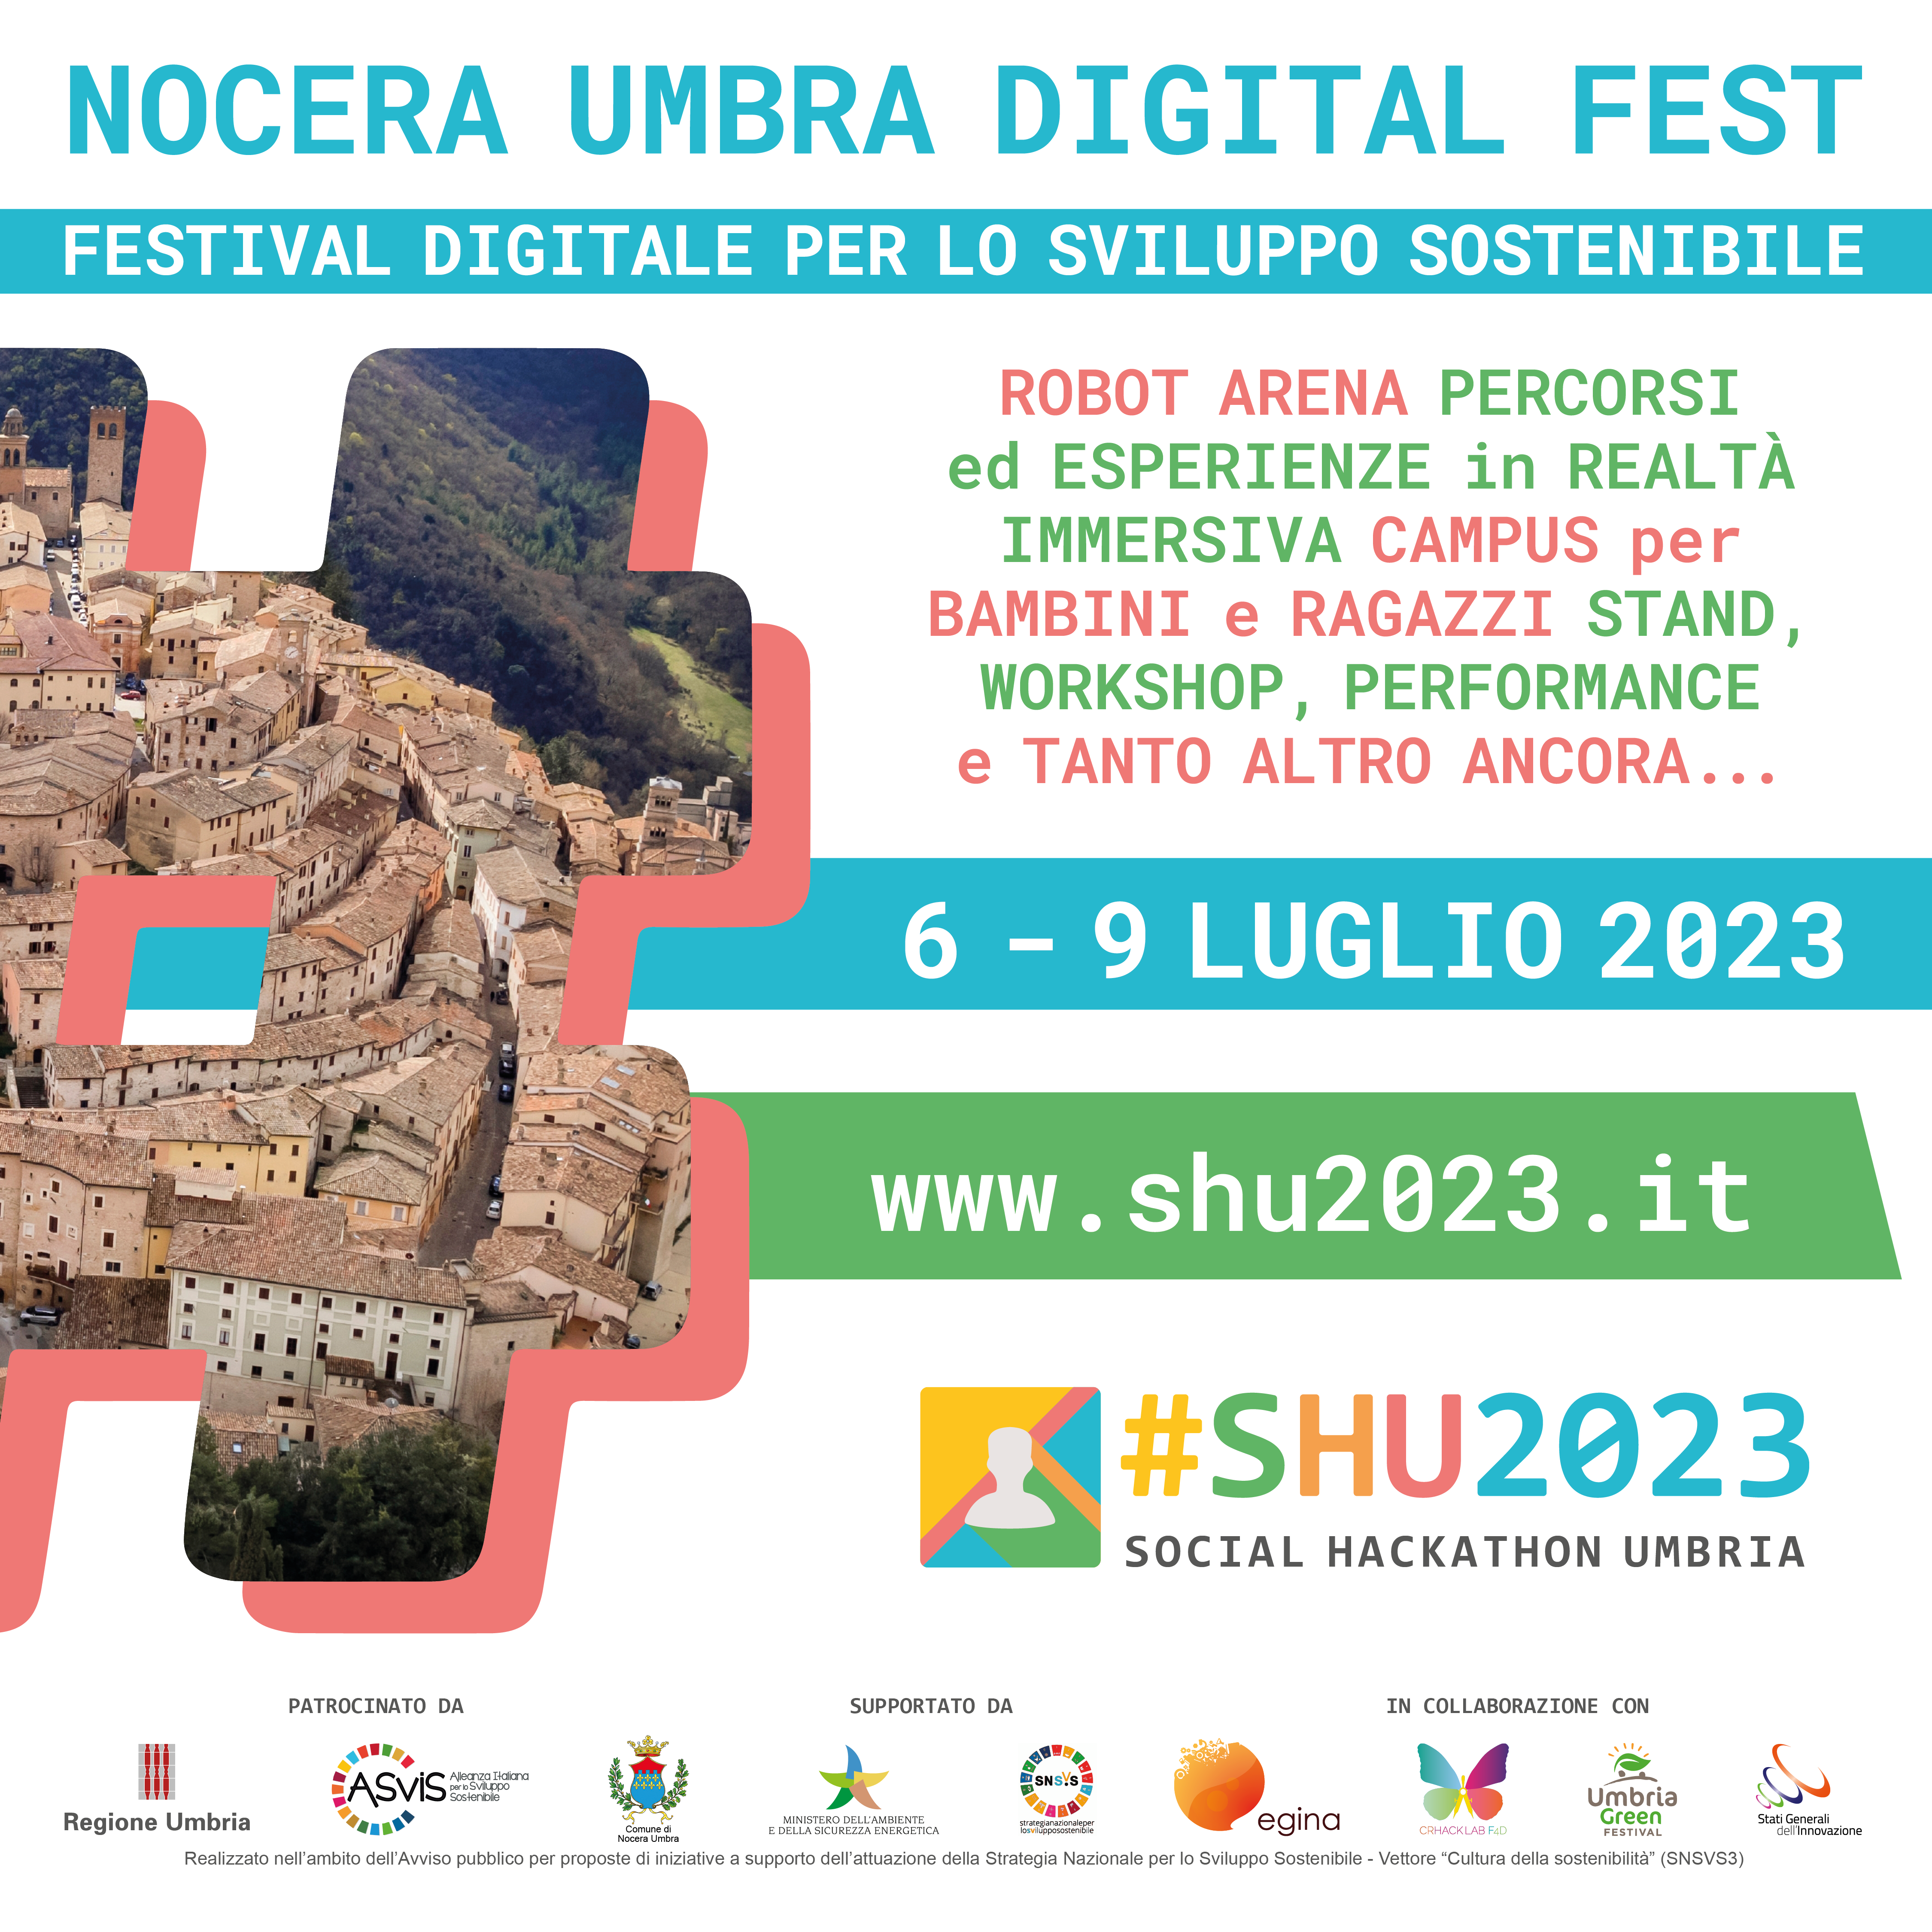 Festival digitale, oltre 300 partecipanti da tutto il mondo – dal 6 al 9 Luglio 2023 a Nocera Umbra